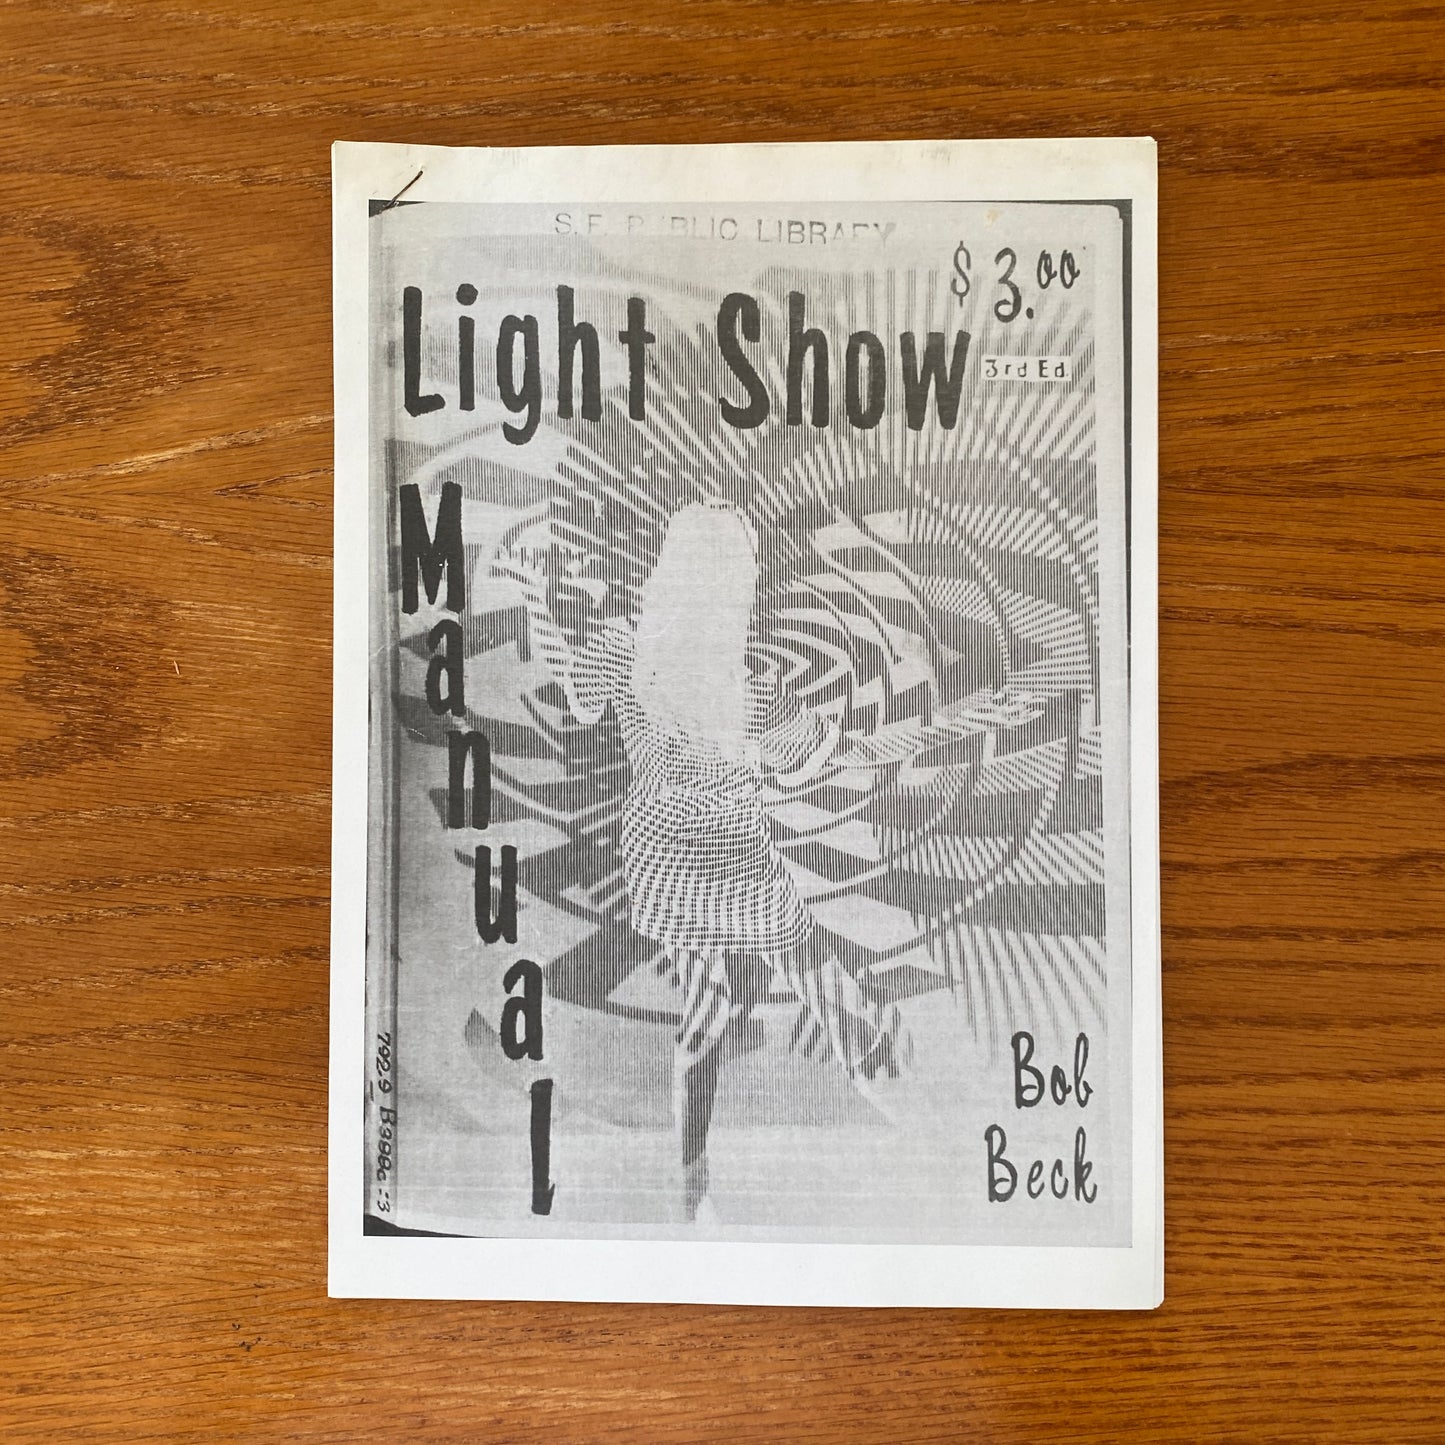 Light Show Manual - Bob Beck